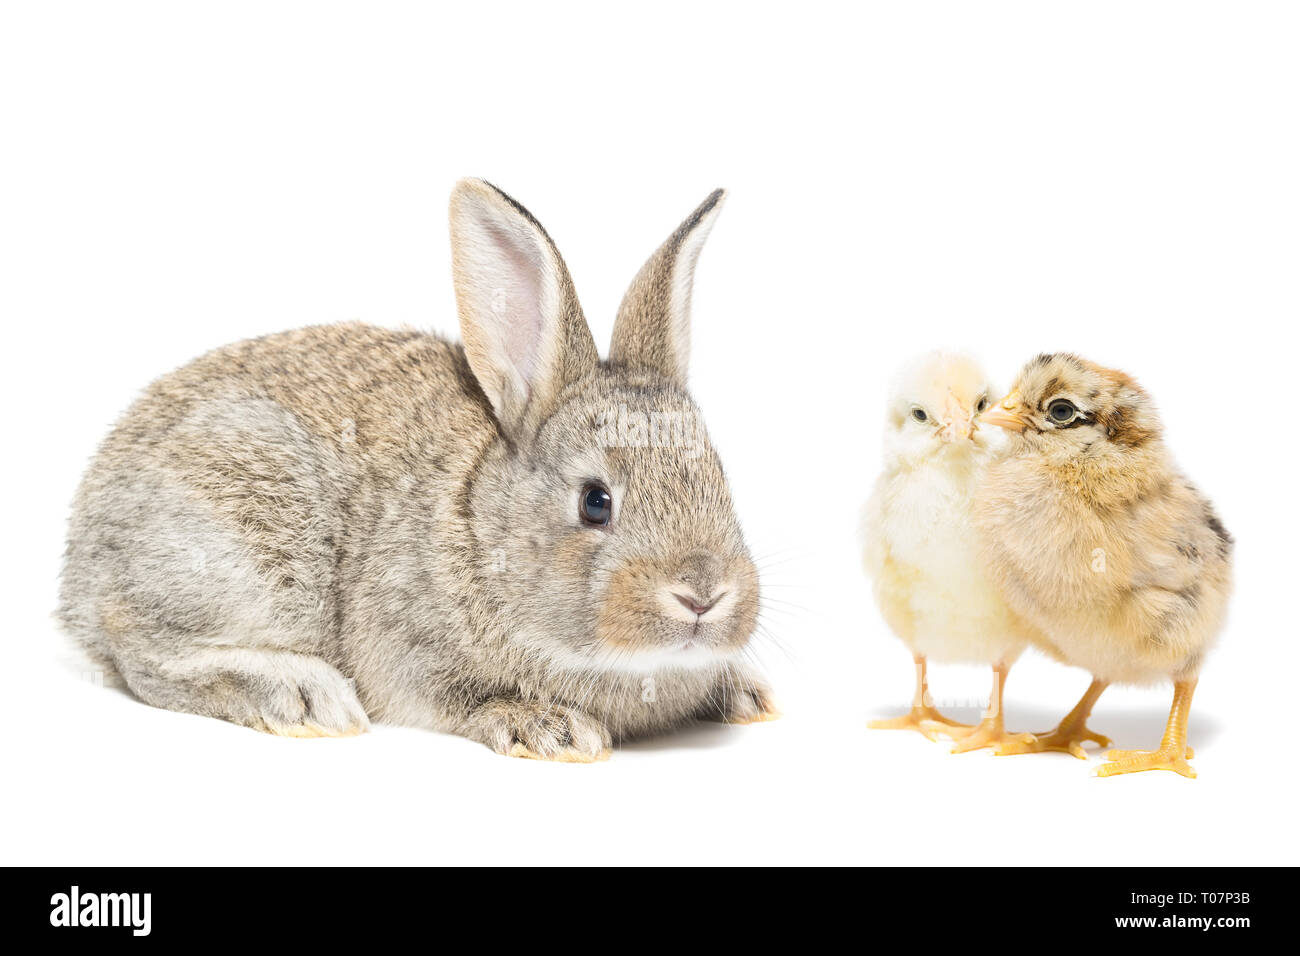 Ostern Hase Und Huhn Auf Weißem Hintergrund Stockfotografie Alamy 9817